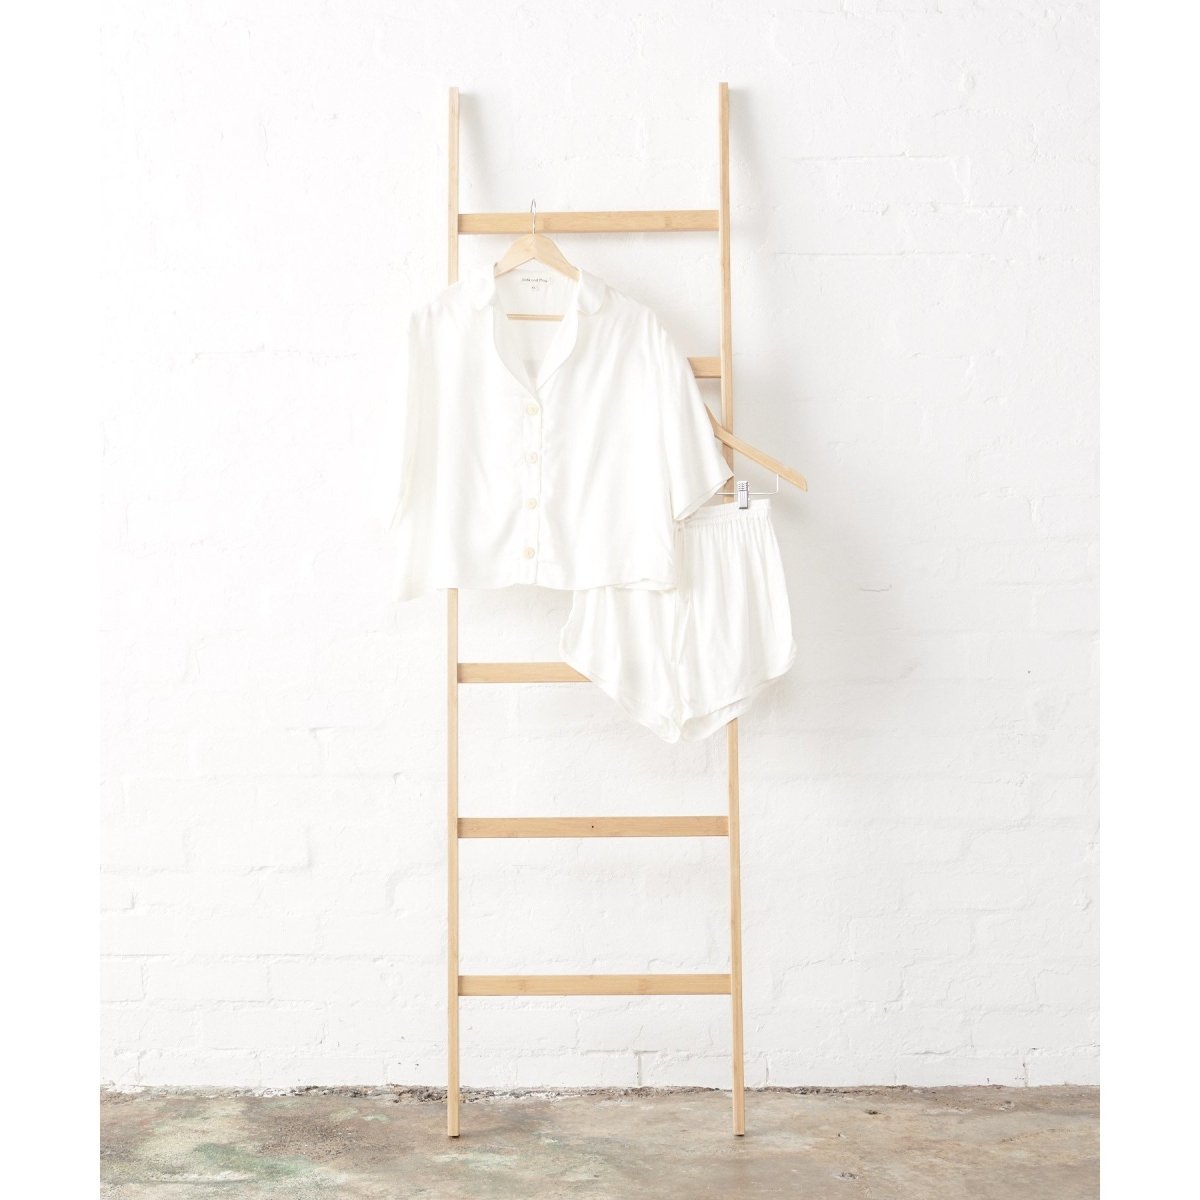 Bamboo Pyjamas - Crop Button Up + Short Set in White-Jade and May-Pyjamas-Jade and May